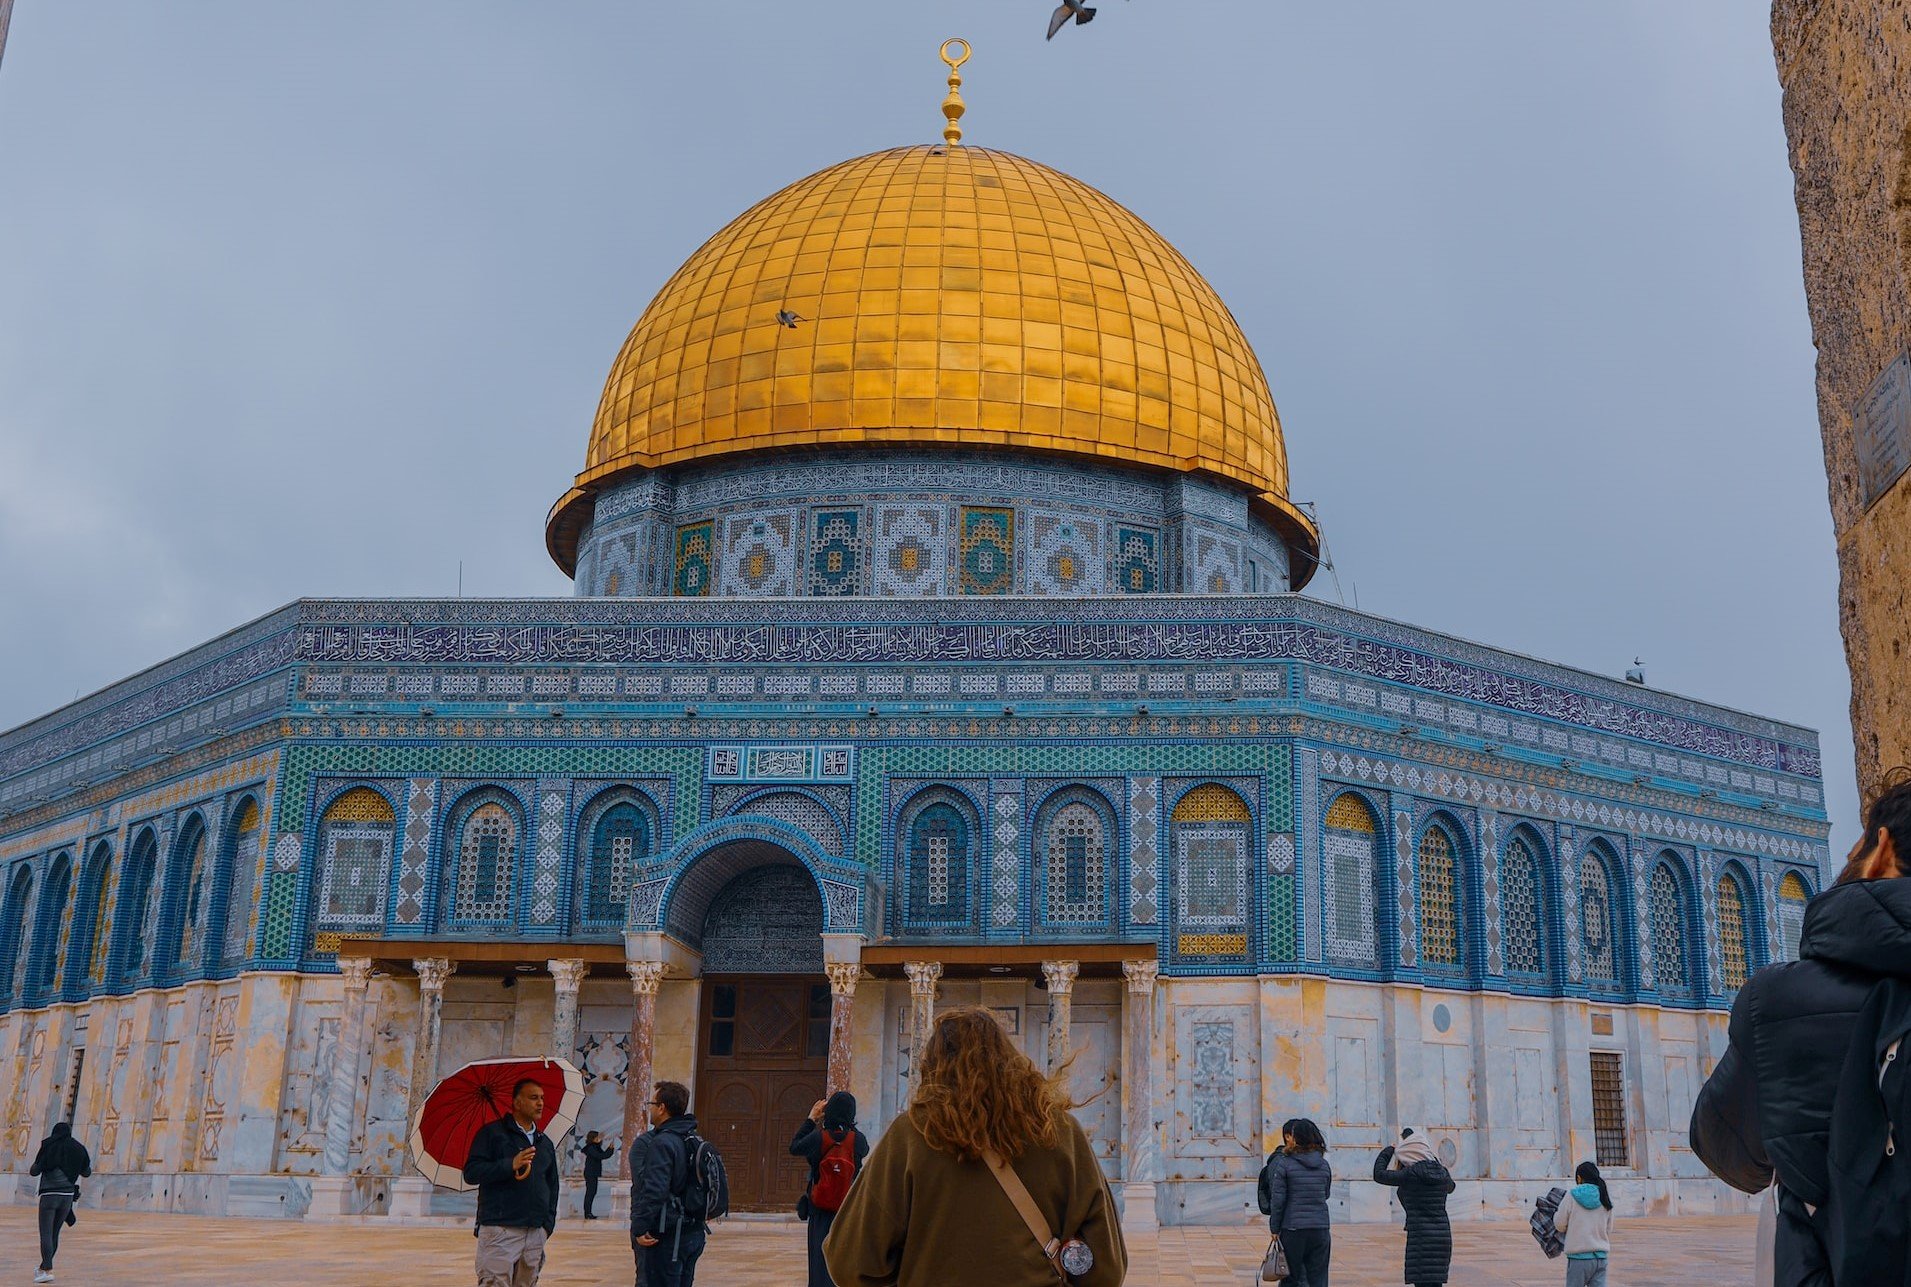 Cristãos fazem 27 horas de oração por Israel no Monte do Templo